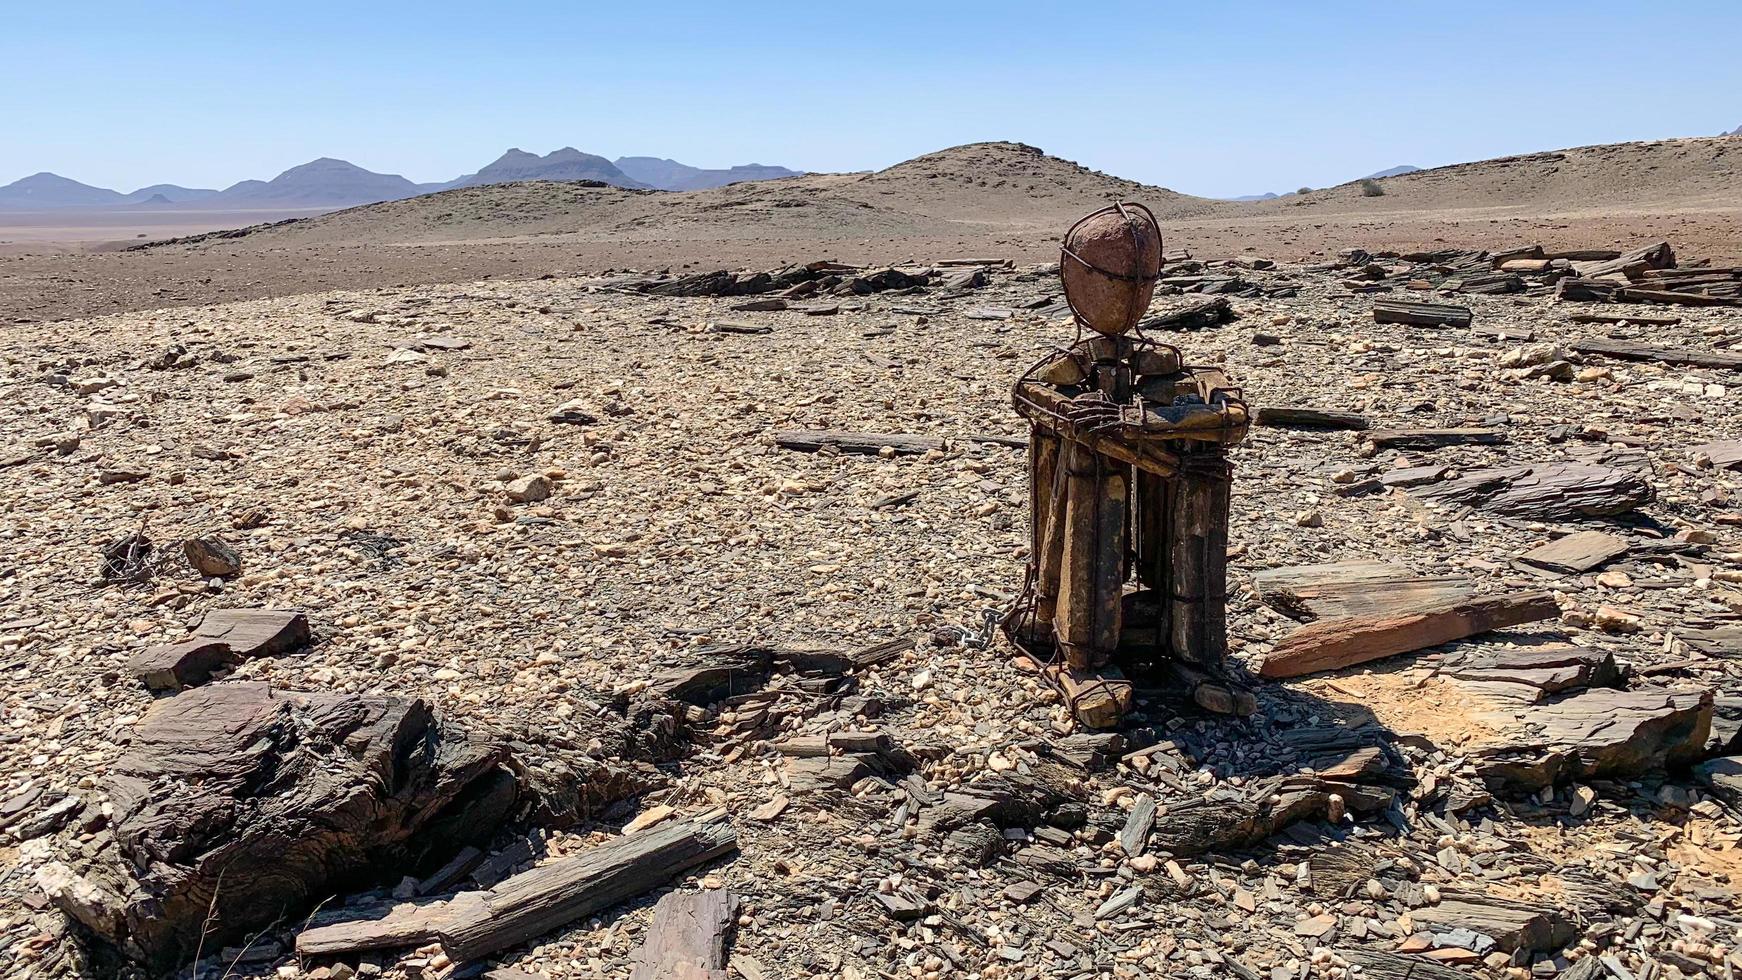 kaokoveld, kund, Namibia, 2021 - Sammanträde ensam man i de omfattande öken- foto